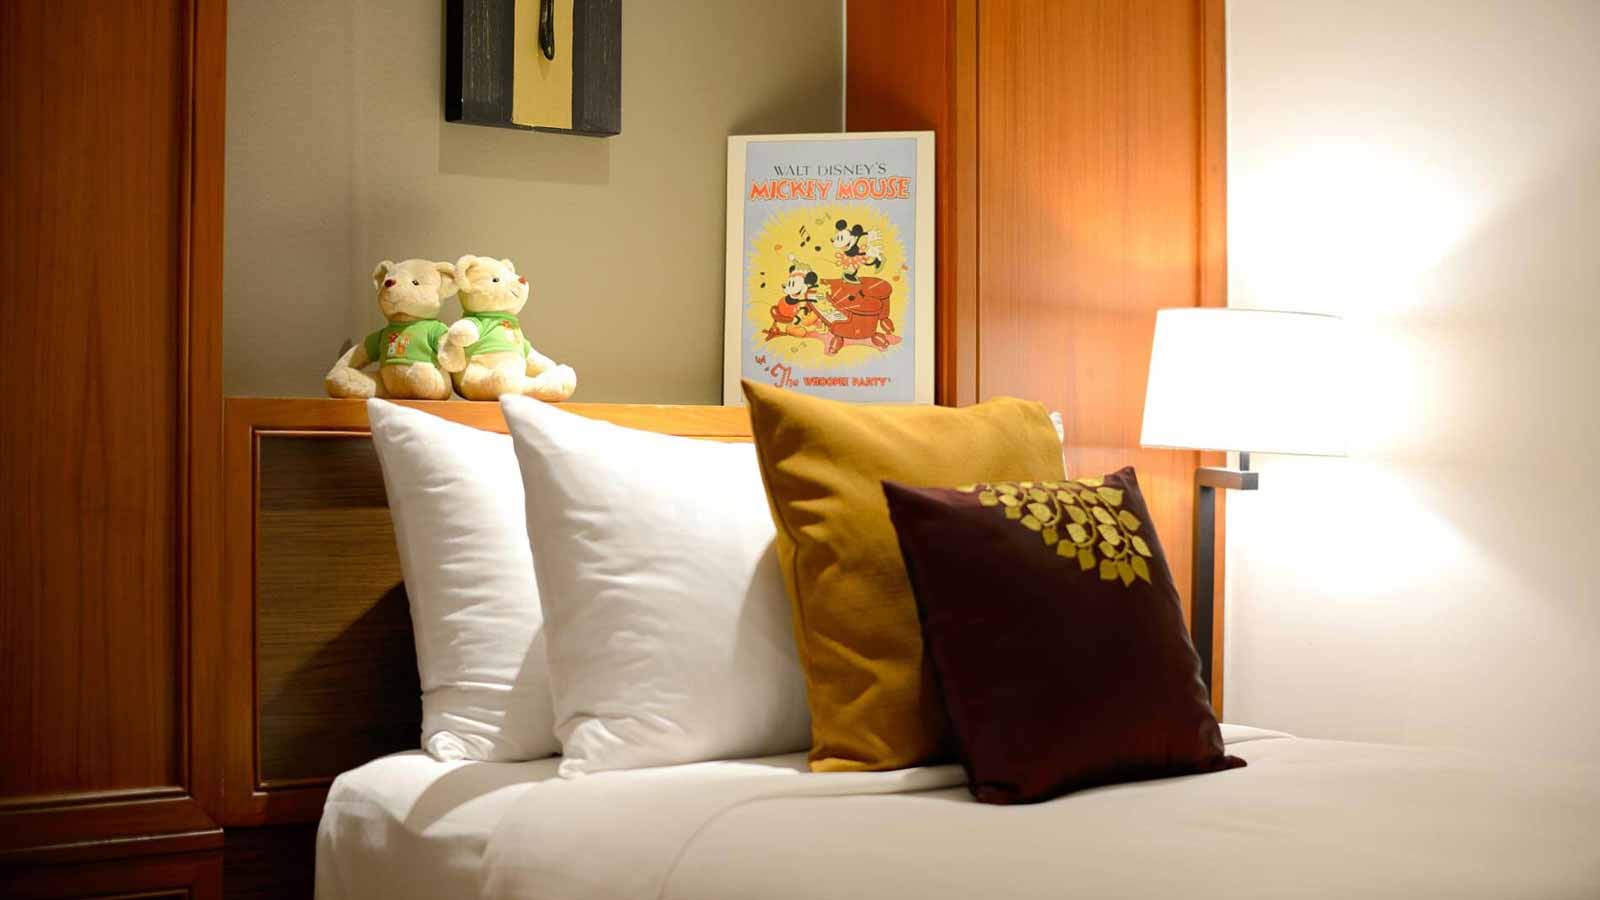 เตียงคู่ เหมาะสำหรับเด็ก - ห้องดีลักซ์ แฟมิลี่ - โรงแรม อมารี ดอนเมือง แอร์พอร์ต กรุงเทพ - อมารี ดอนเมือง แอร์พอร์ต กรุงเทพฯ